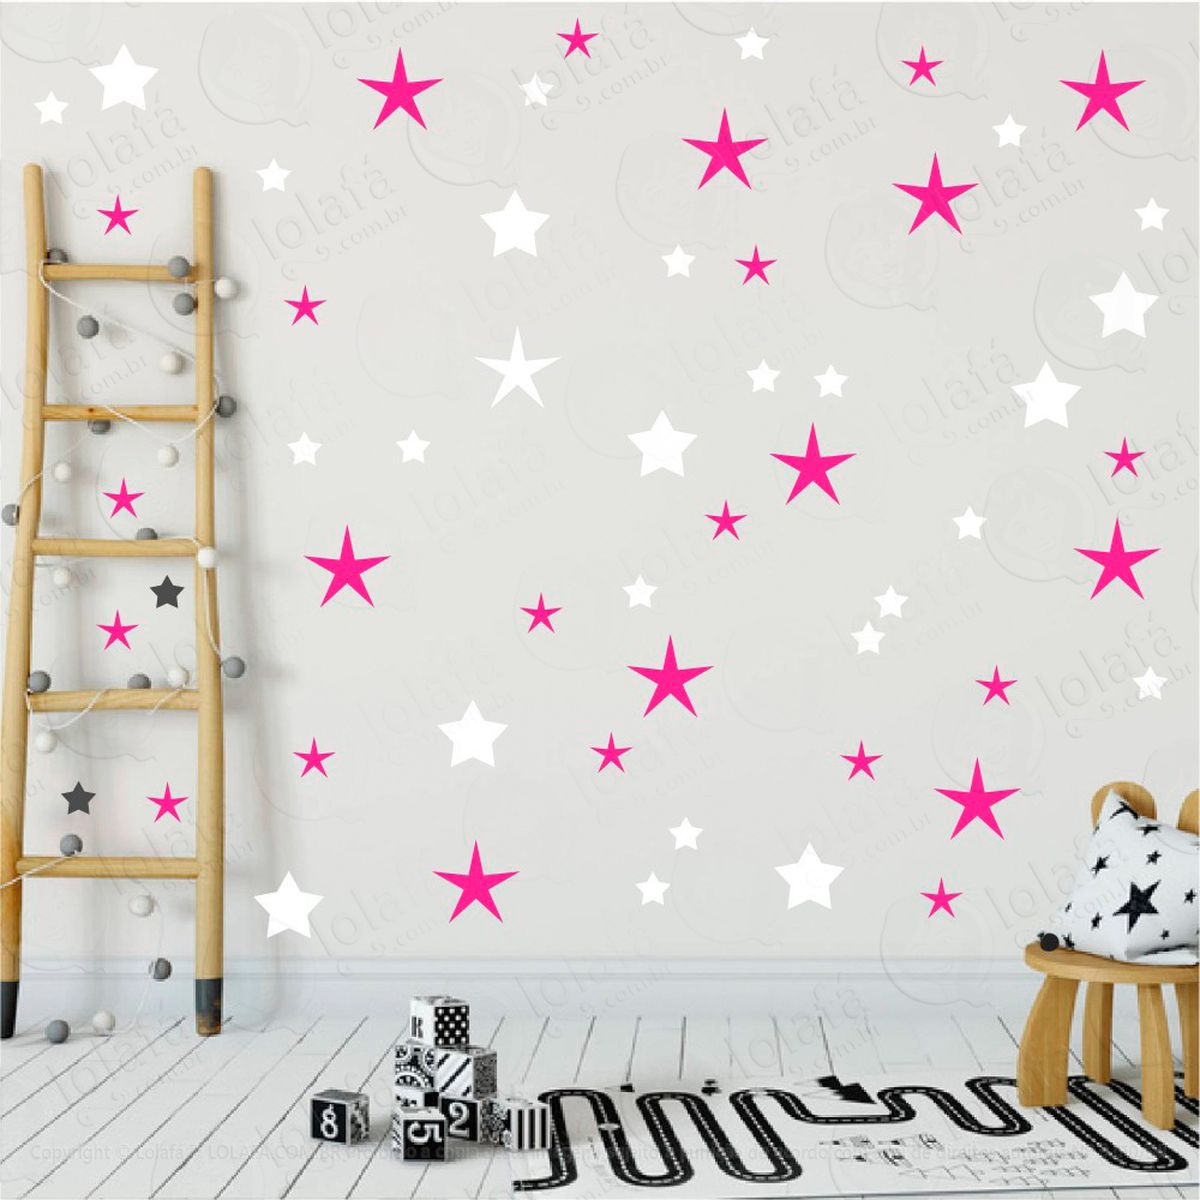 adesivos estrelas 90 peças adesivos para quarto de bebê infantil - mod:21